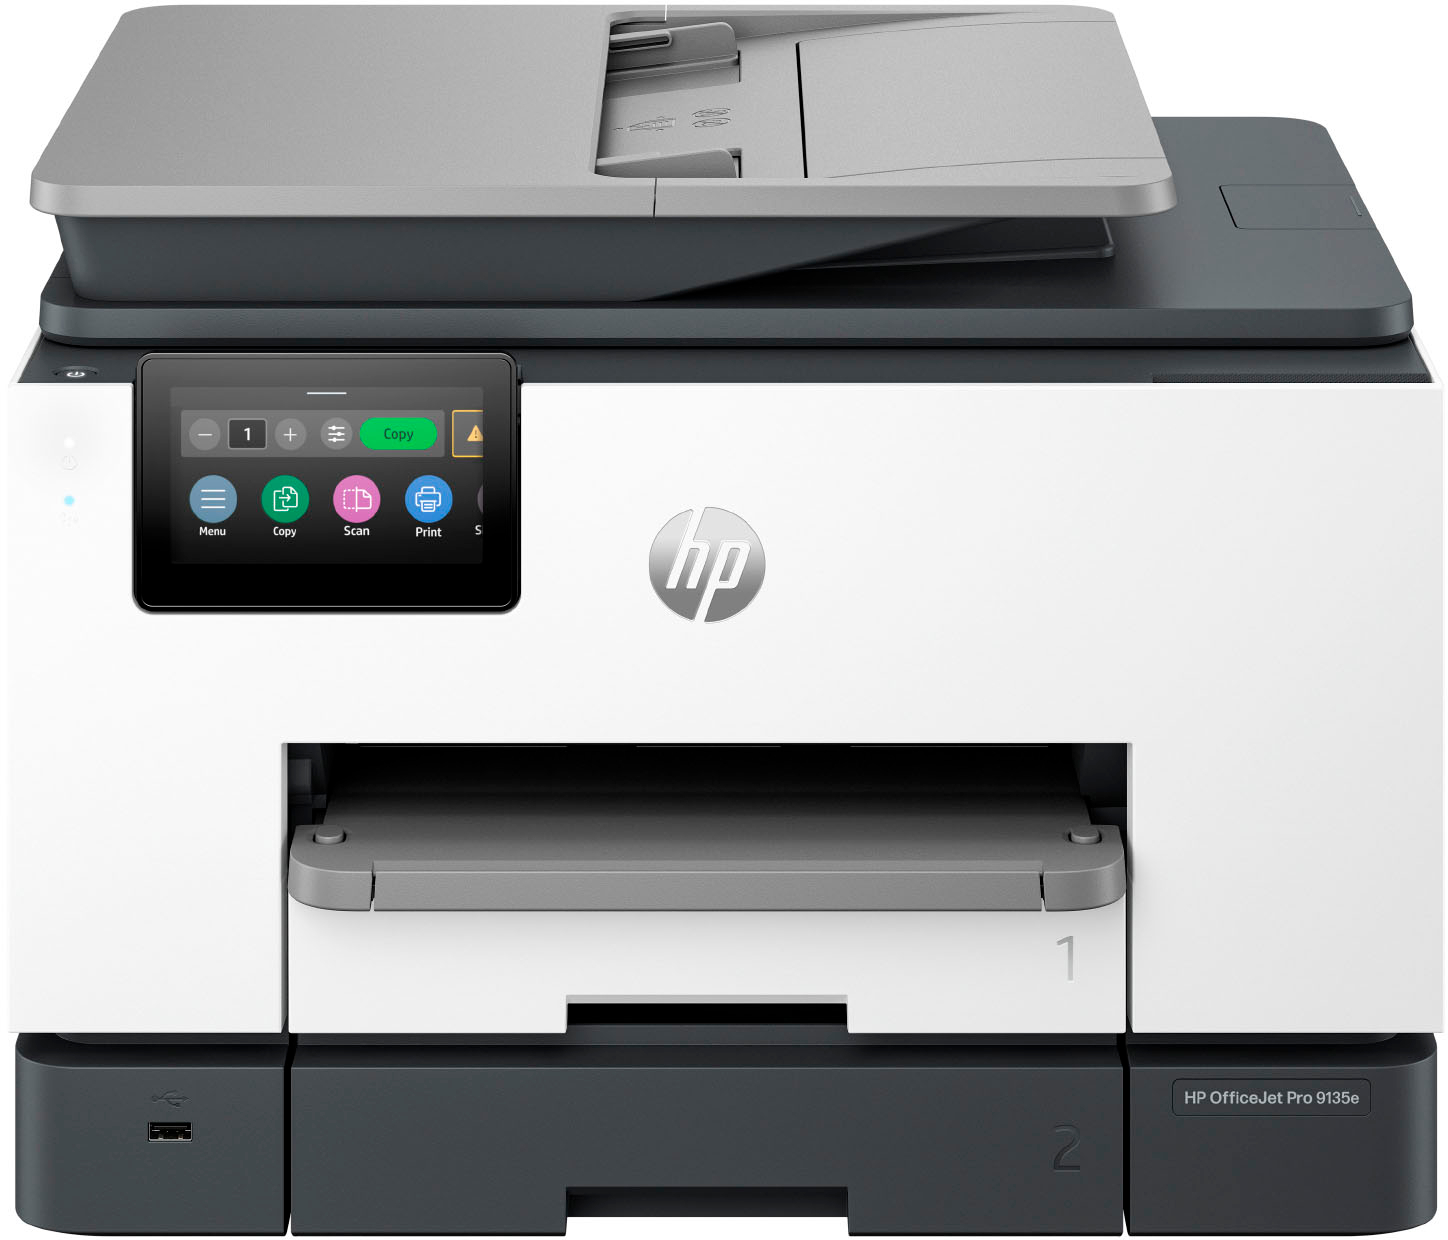 Impresora HP No Escanea